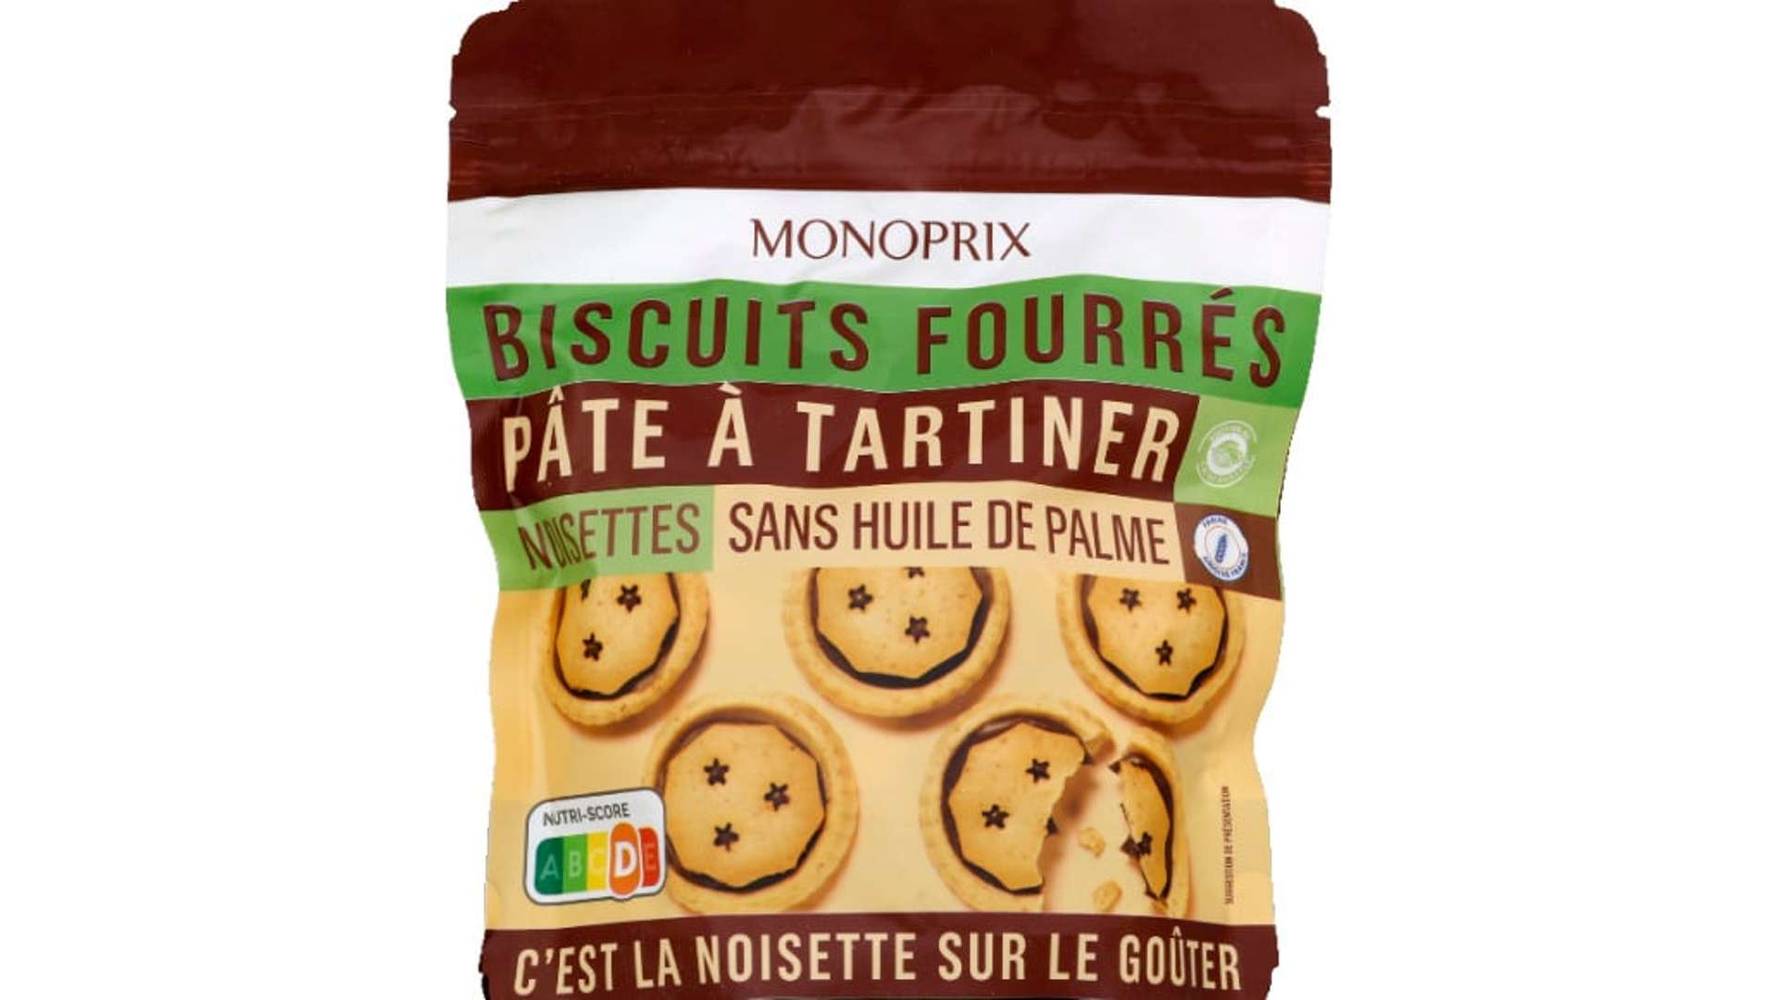 Monoprix - Biscuits fourrés de pâte à tartiner (noisettes)